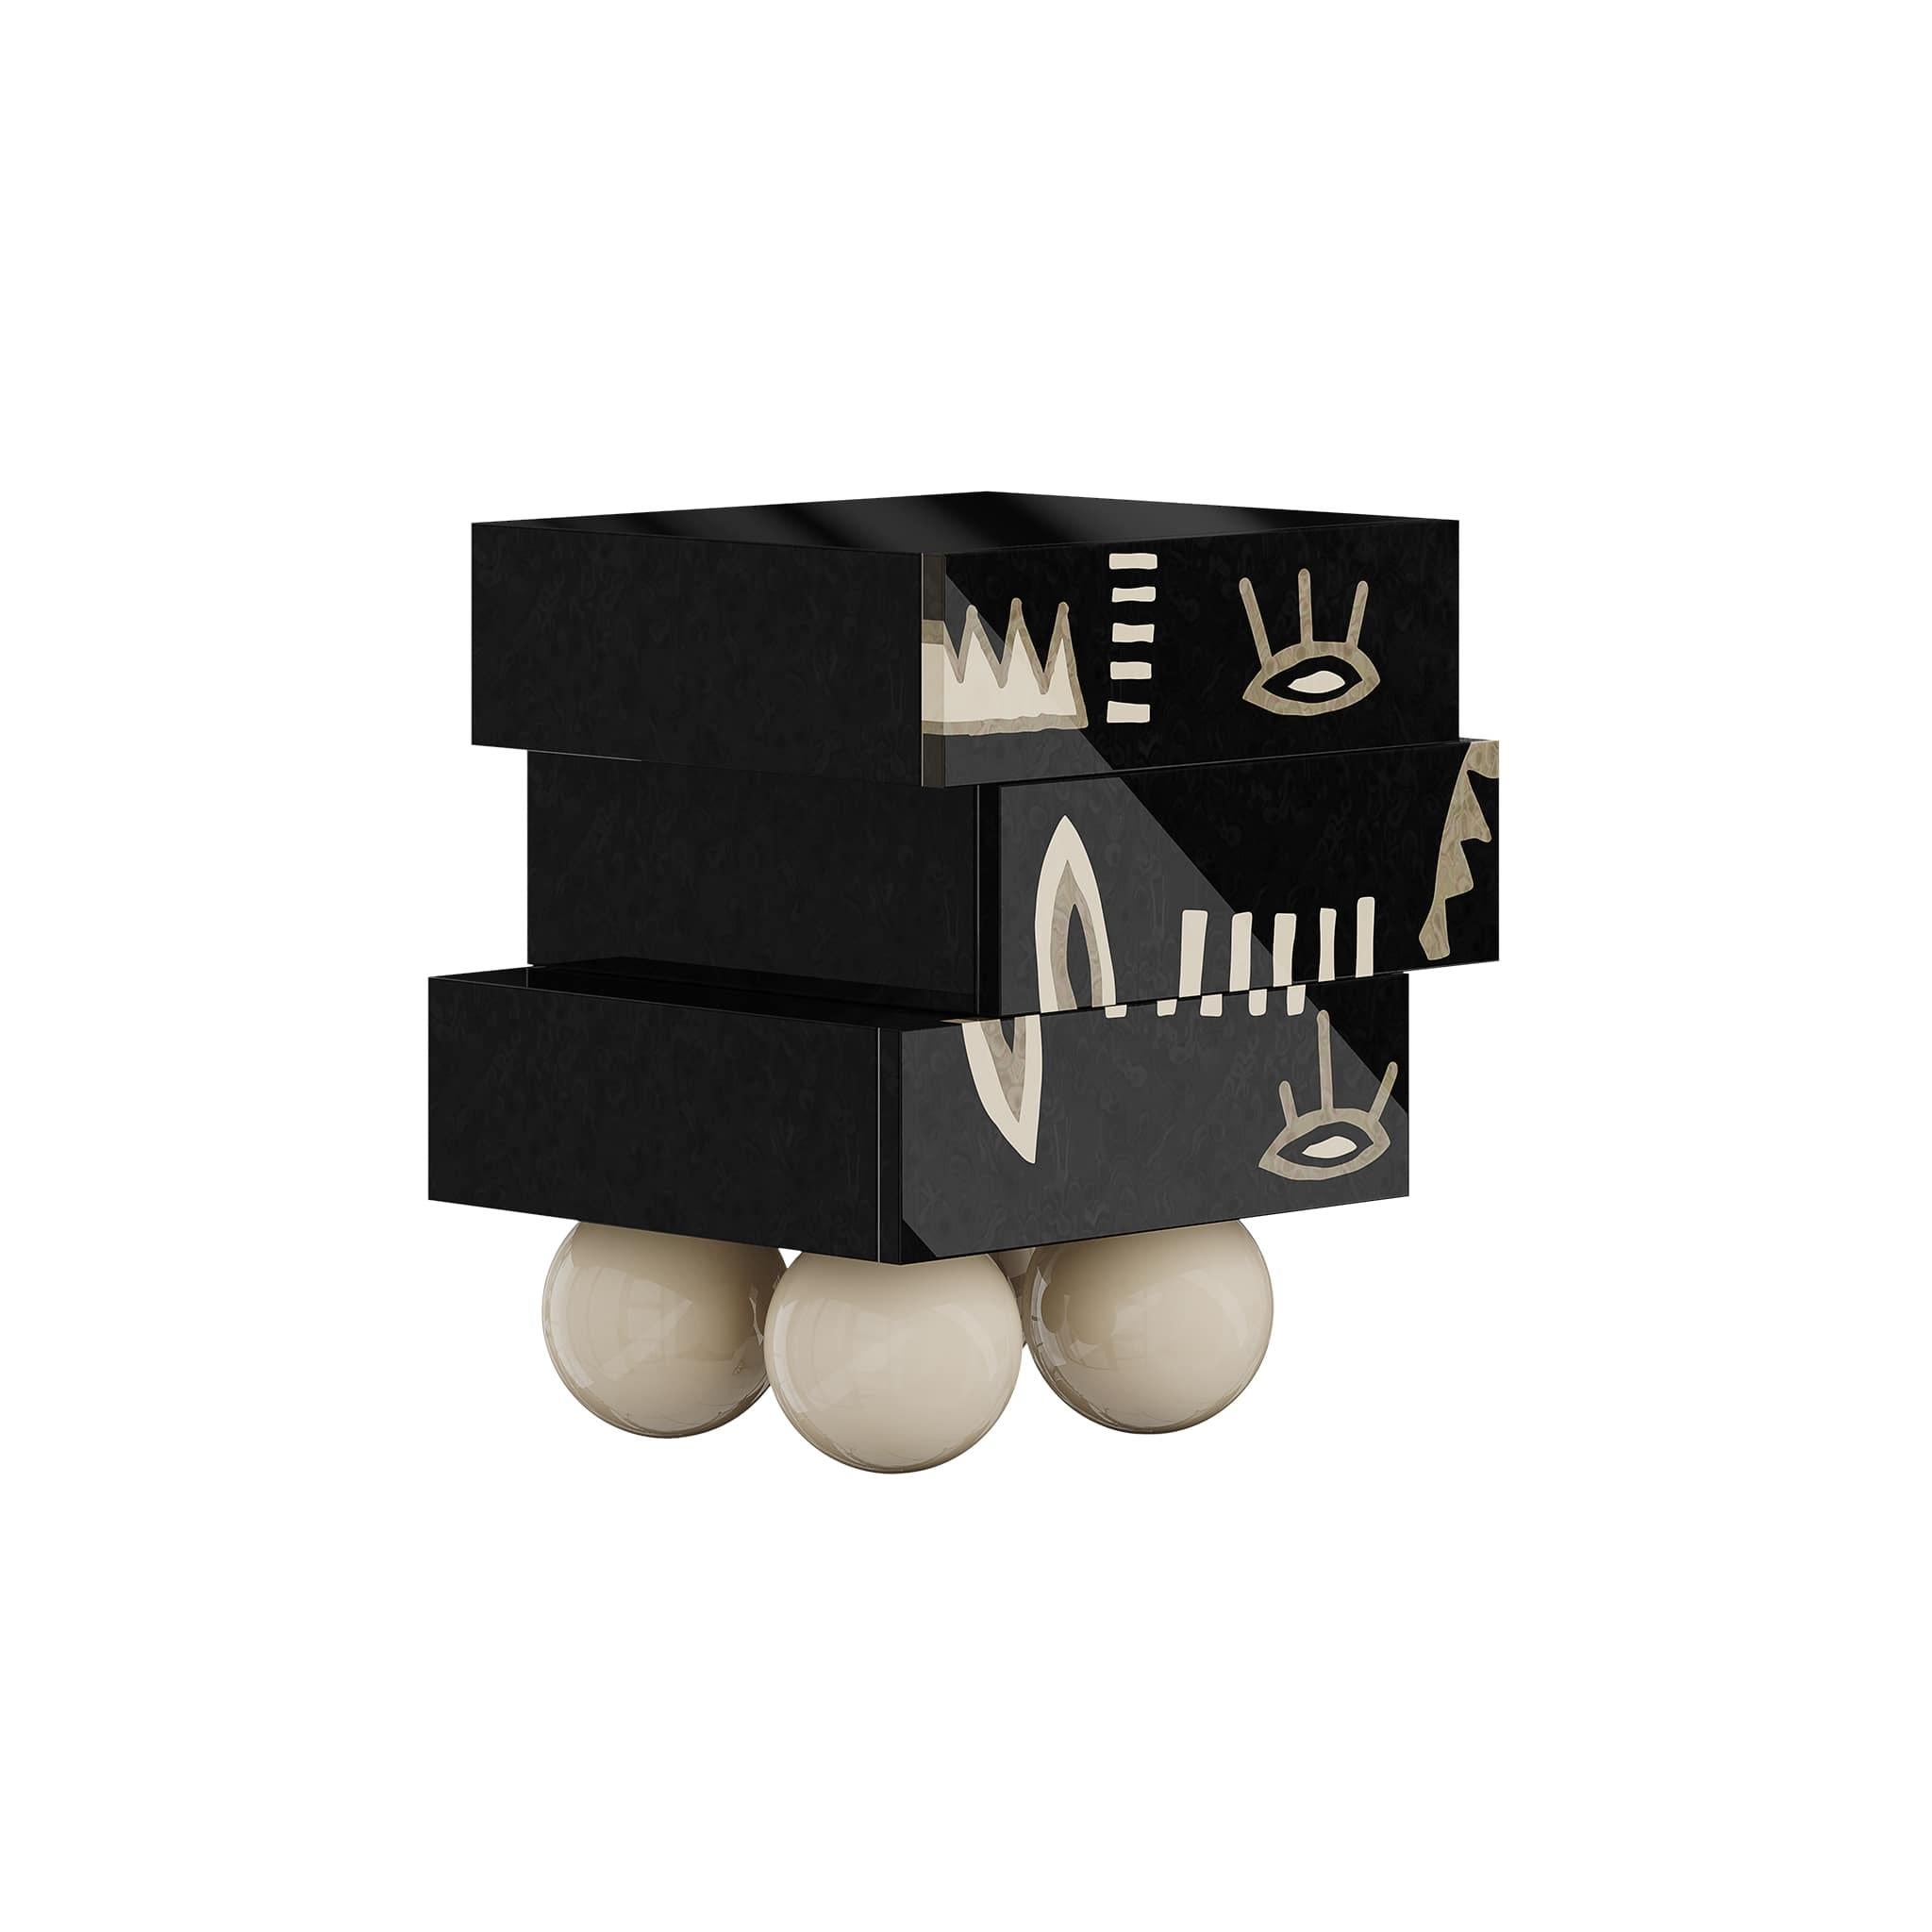 La table de chevet Tribal apporte un style design incomparable. Ce chevet moderne noir est un meuble audacieux qui rehaussera le look de toute décoration de chambre à coucher contemporaine. Sa silhouette dynamique présente trois tiroirs reposant sur